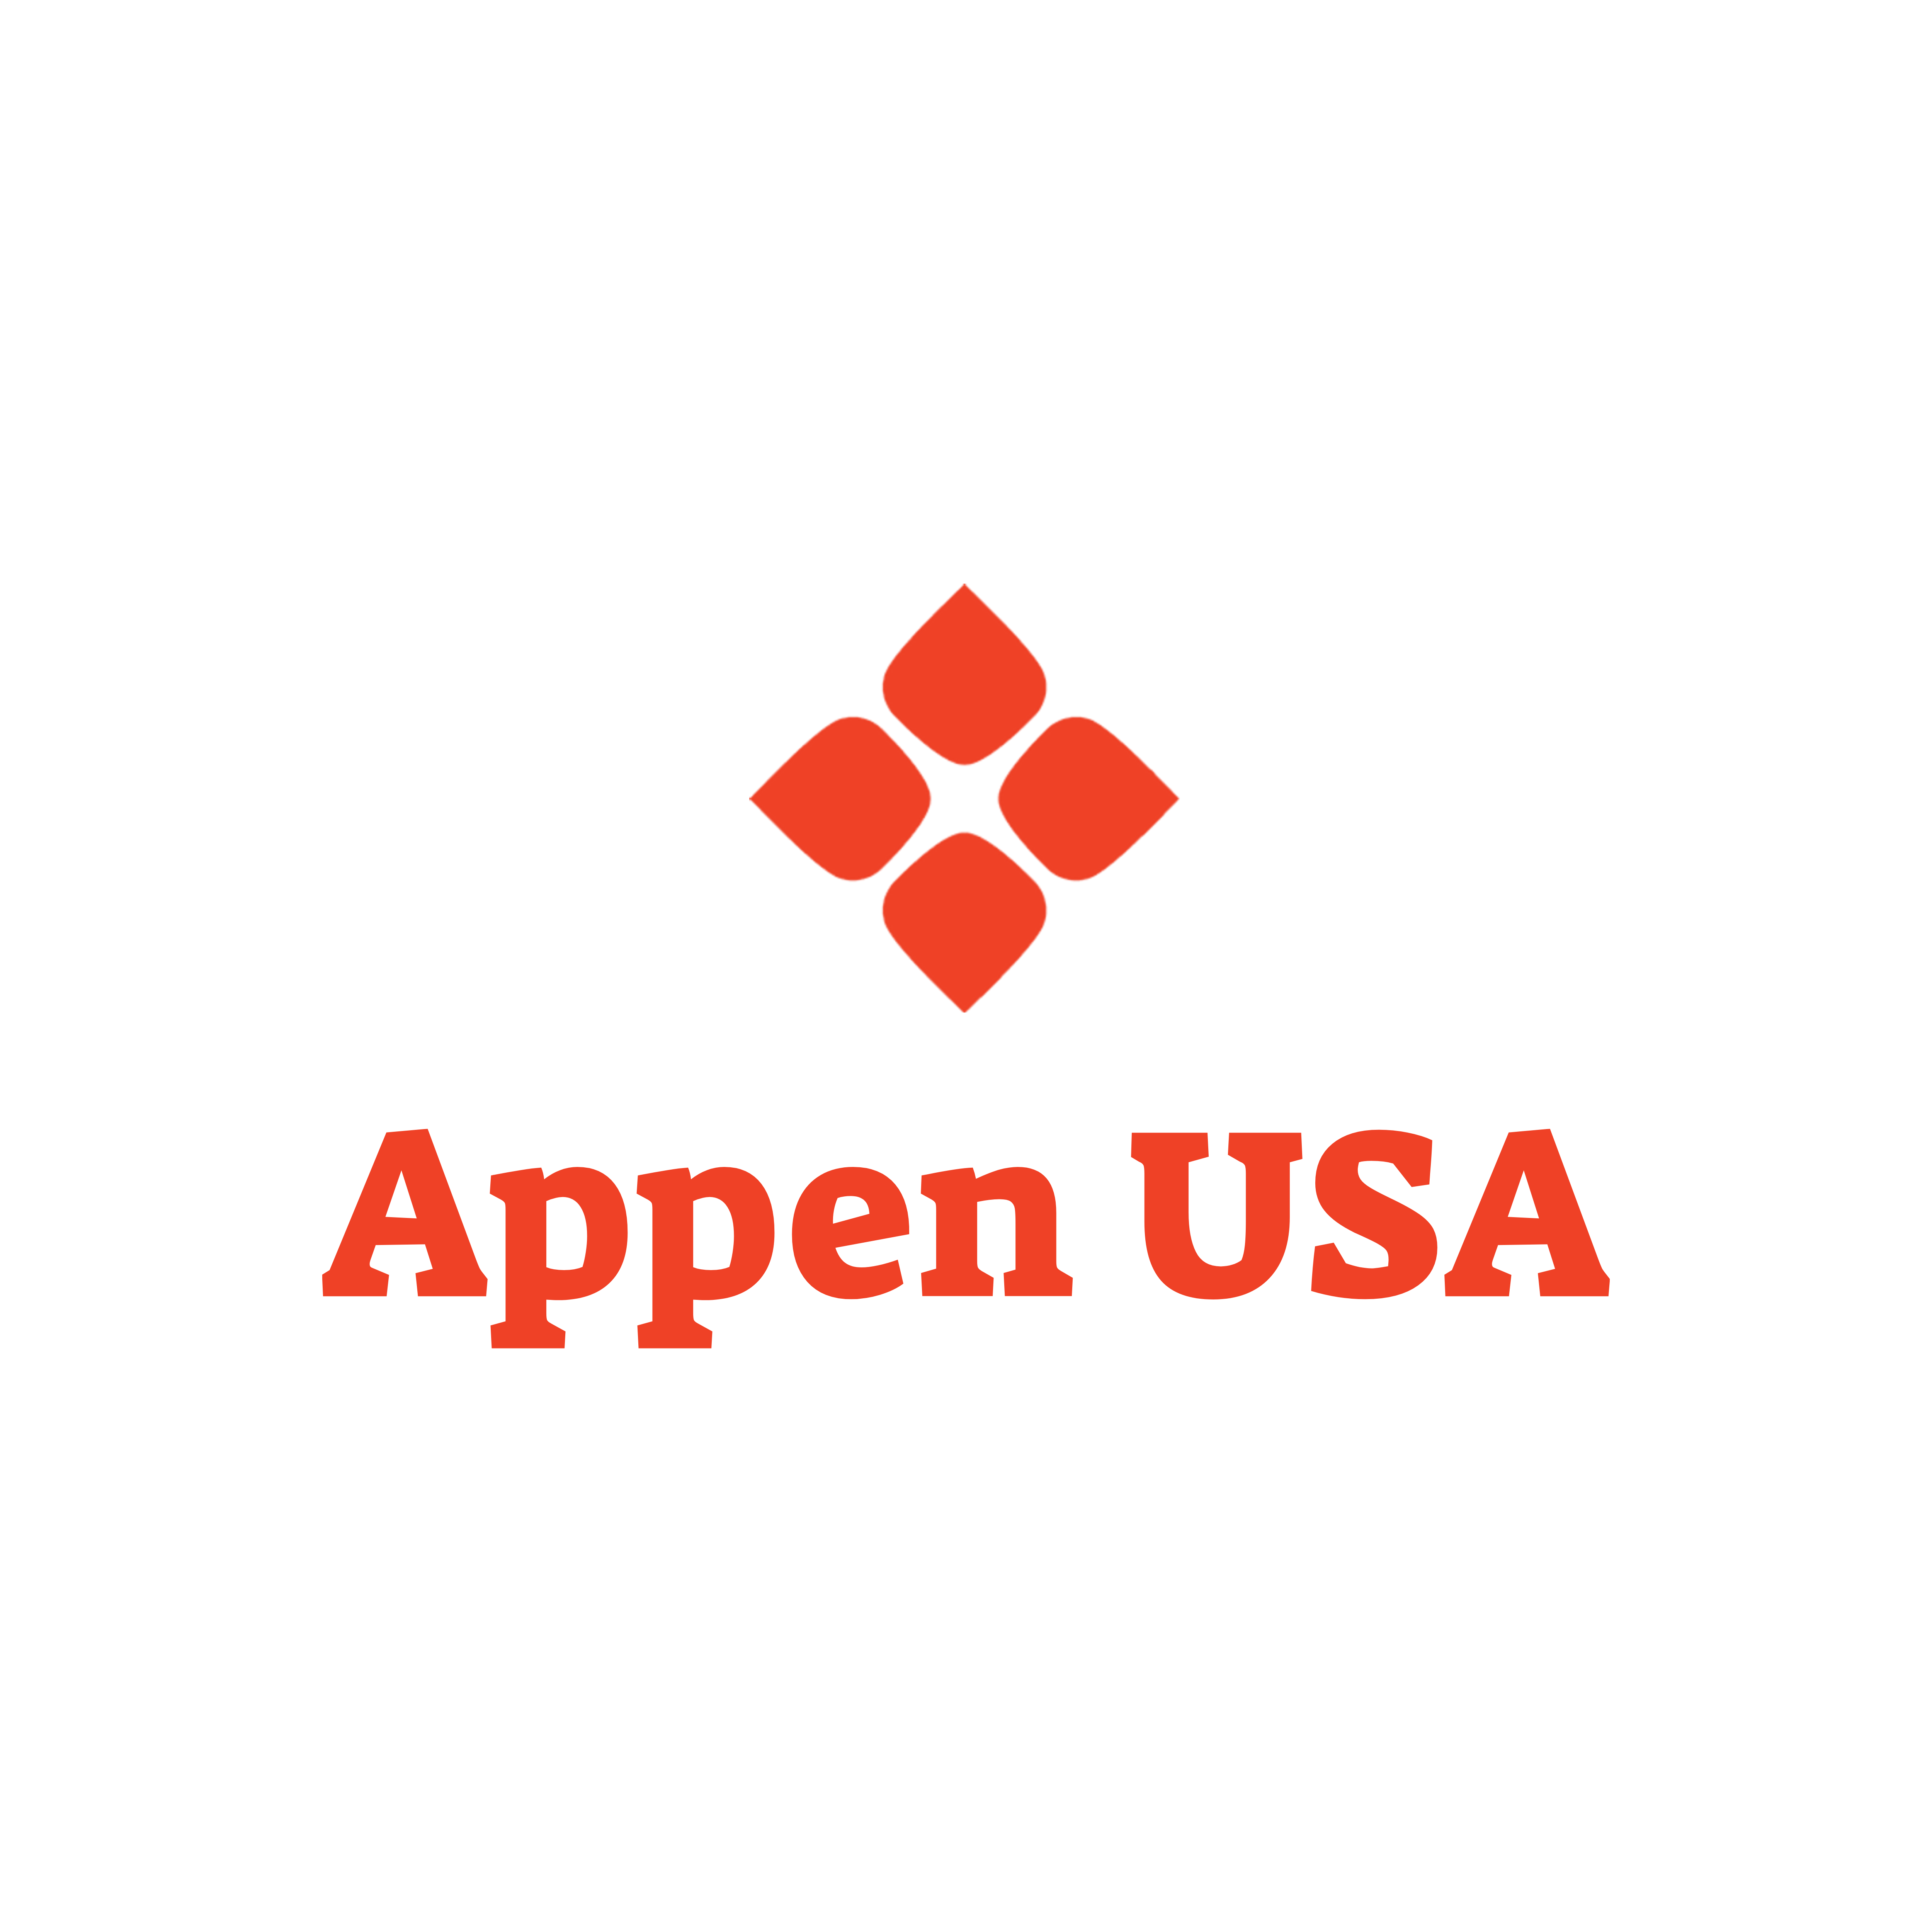 Appen USA Logo